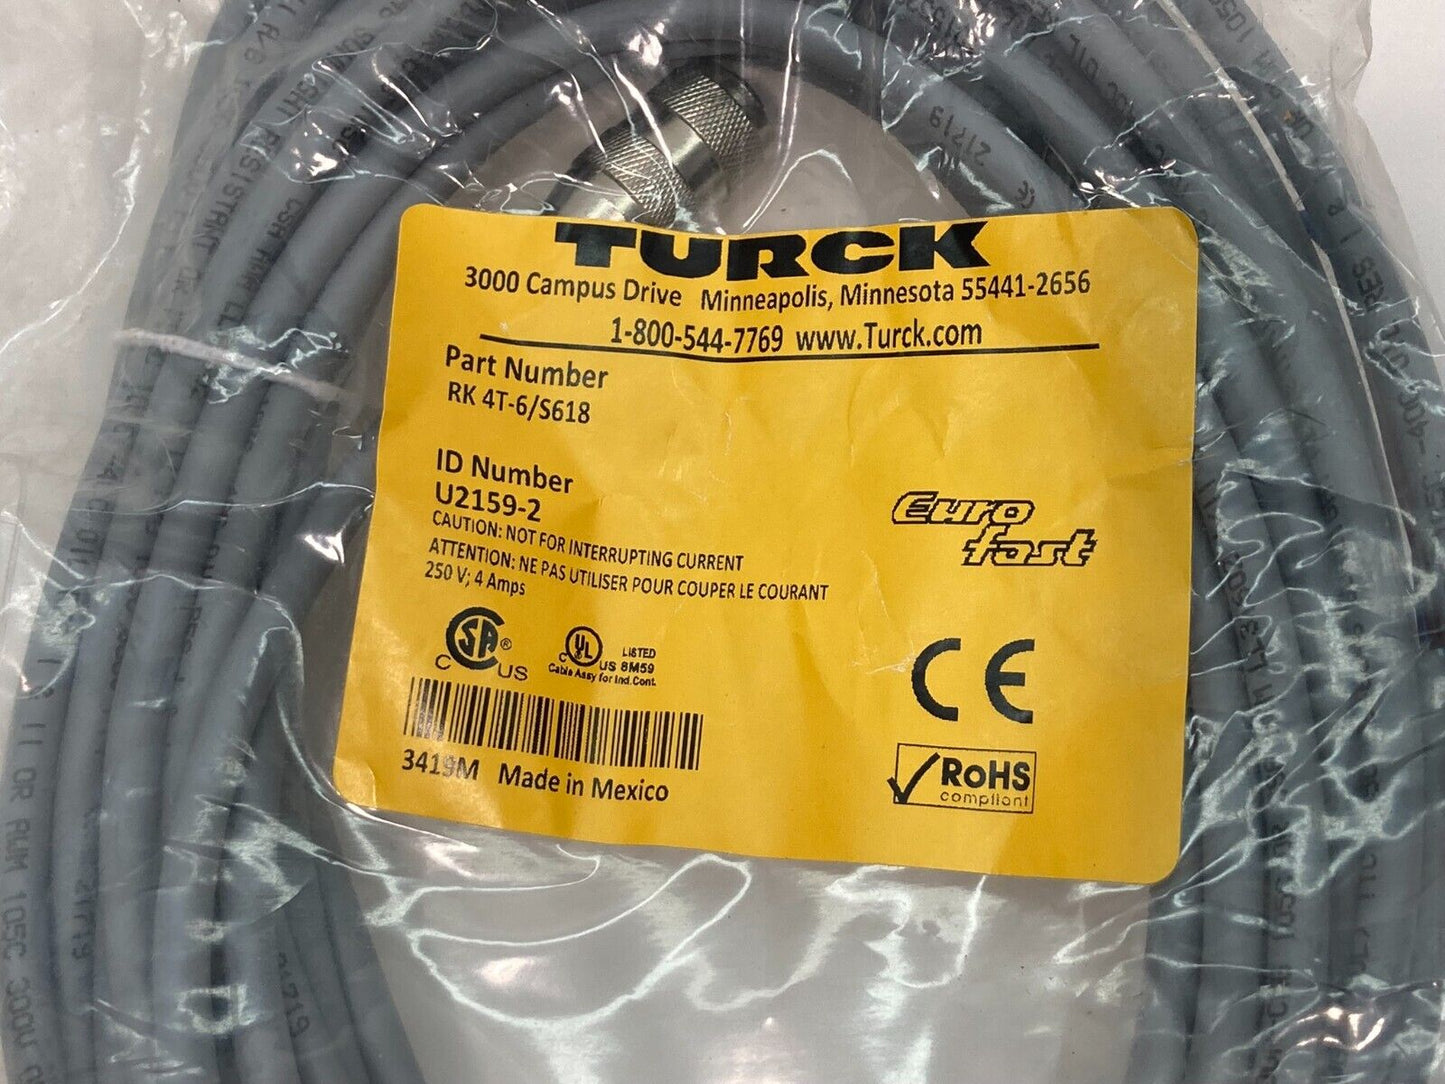 TURCK RK 4T-6/S618 / U2159-2, New